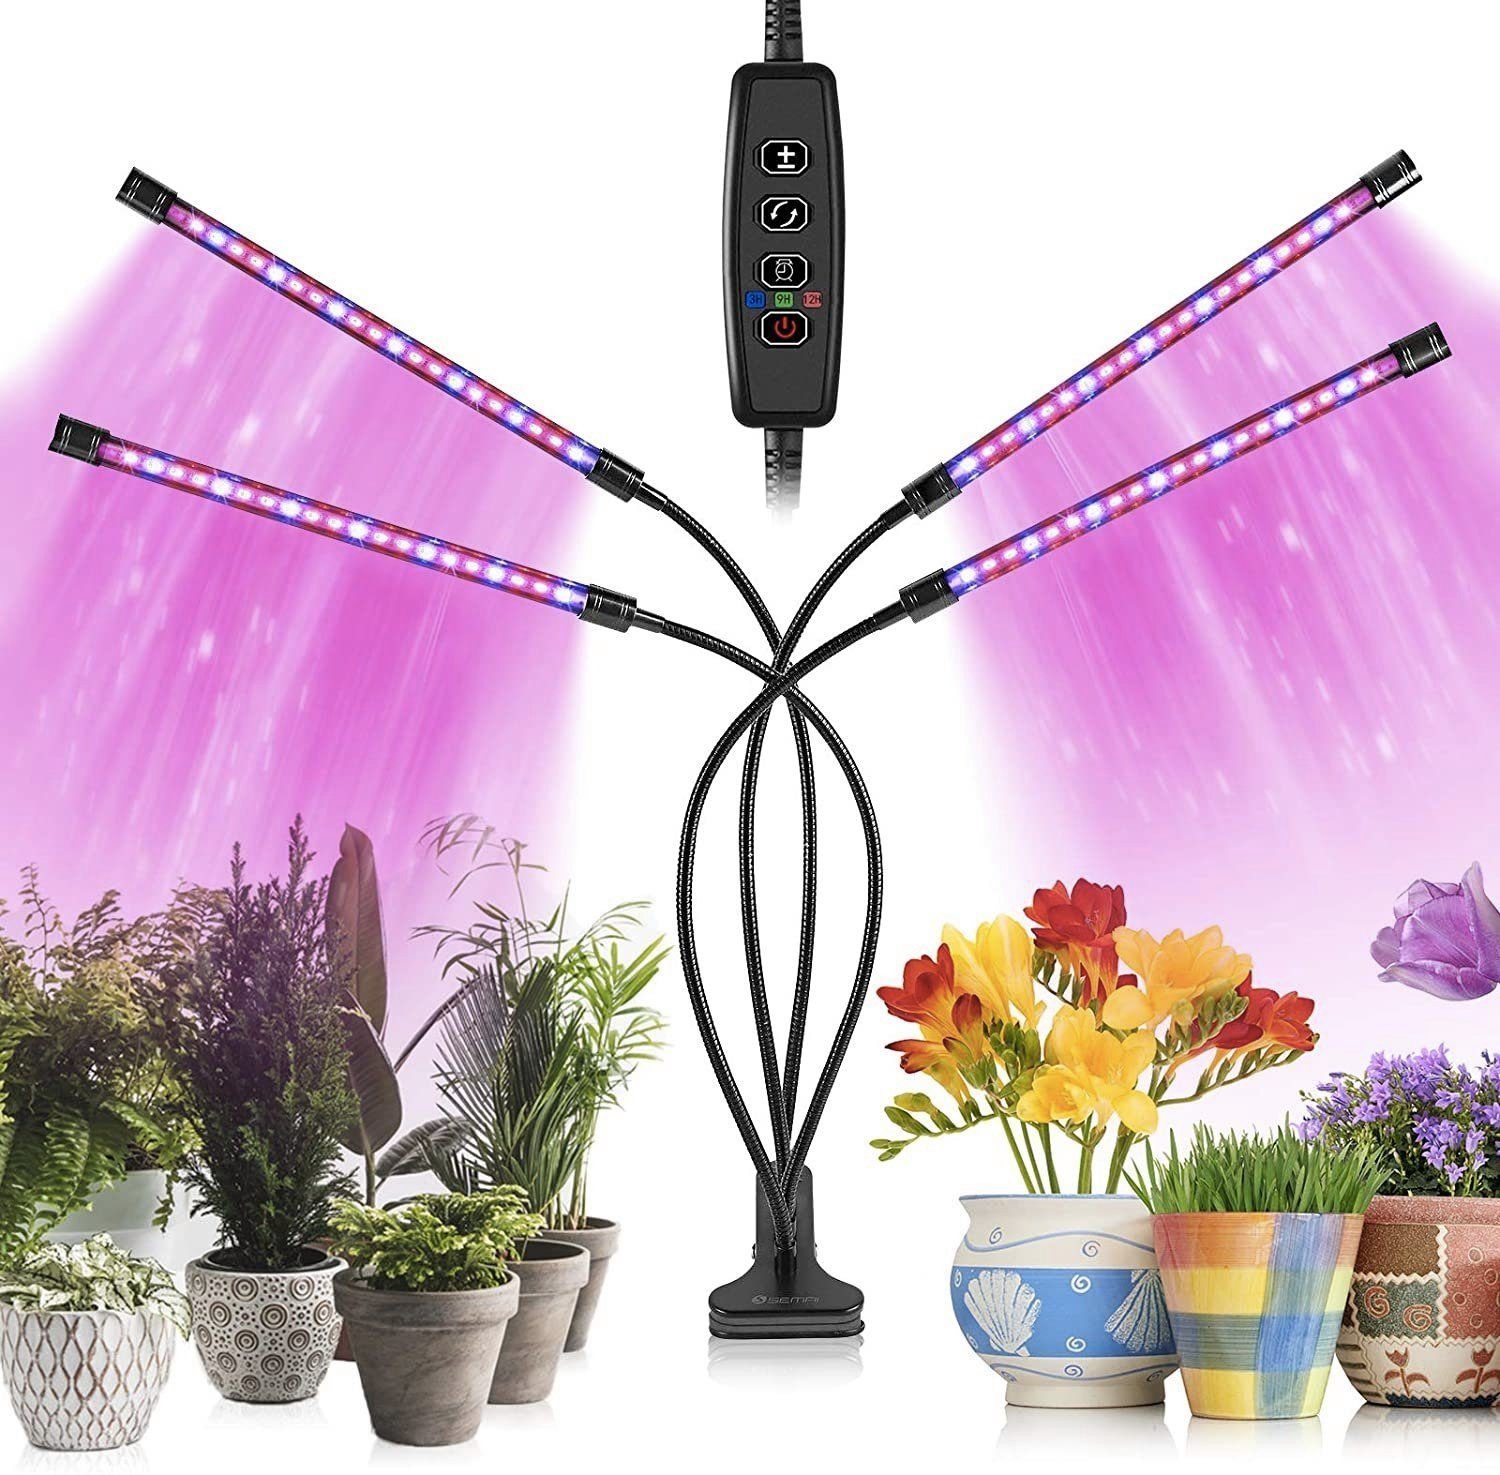 LED Grow Vollspektrum Pflanzenleuchte Wachsen Licht Pflanzenlicht Pflanzenlampe 